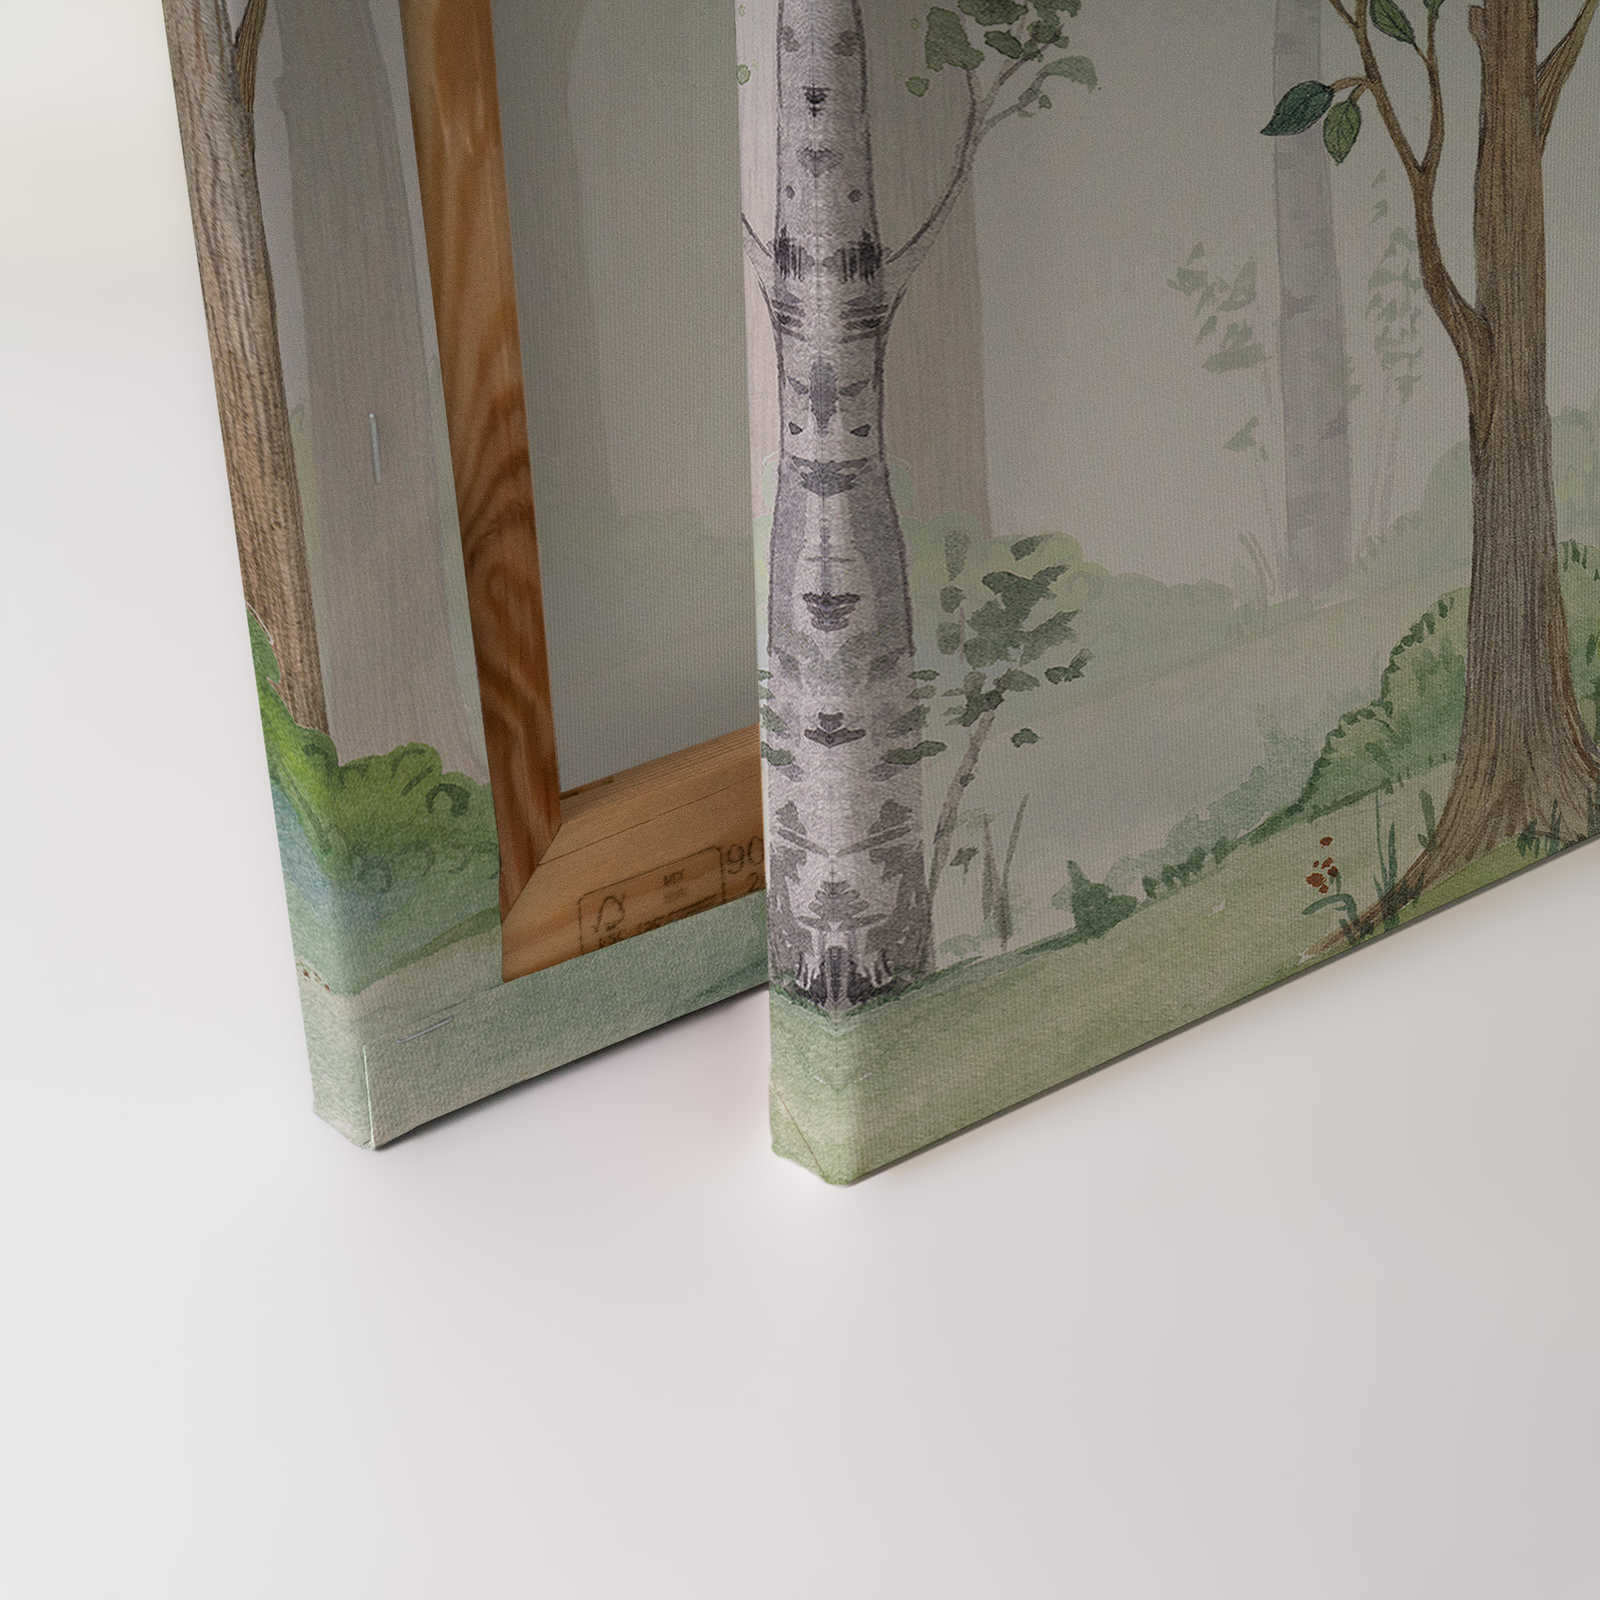             Toile avec forêt peinte pour chambre d'enfant - 0,90 m x 0,60 m
        